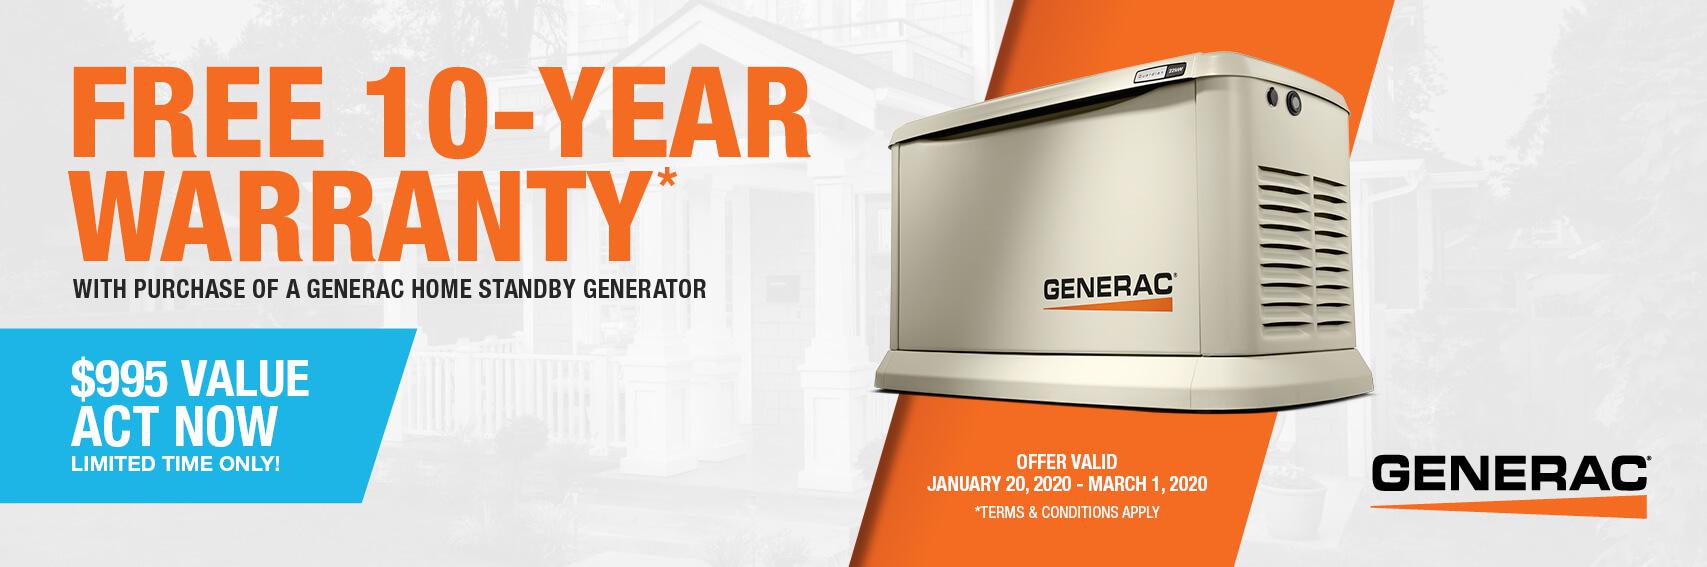 Homestandby Generator Deal | Warranty Offer | Generac Dealer | New Orleans, LA